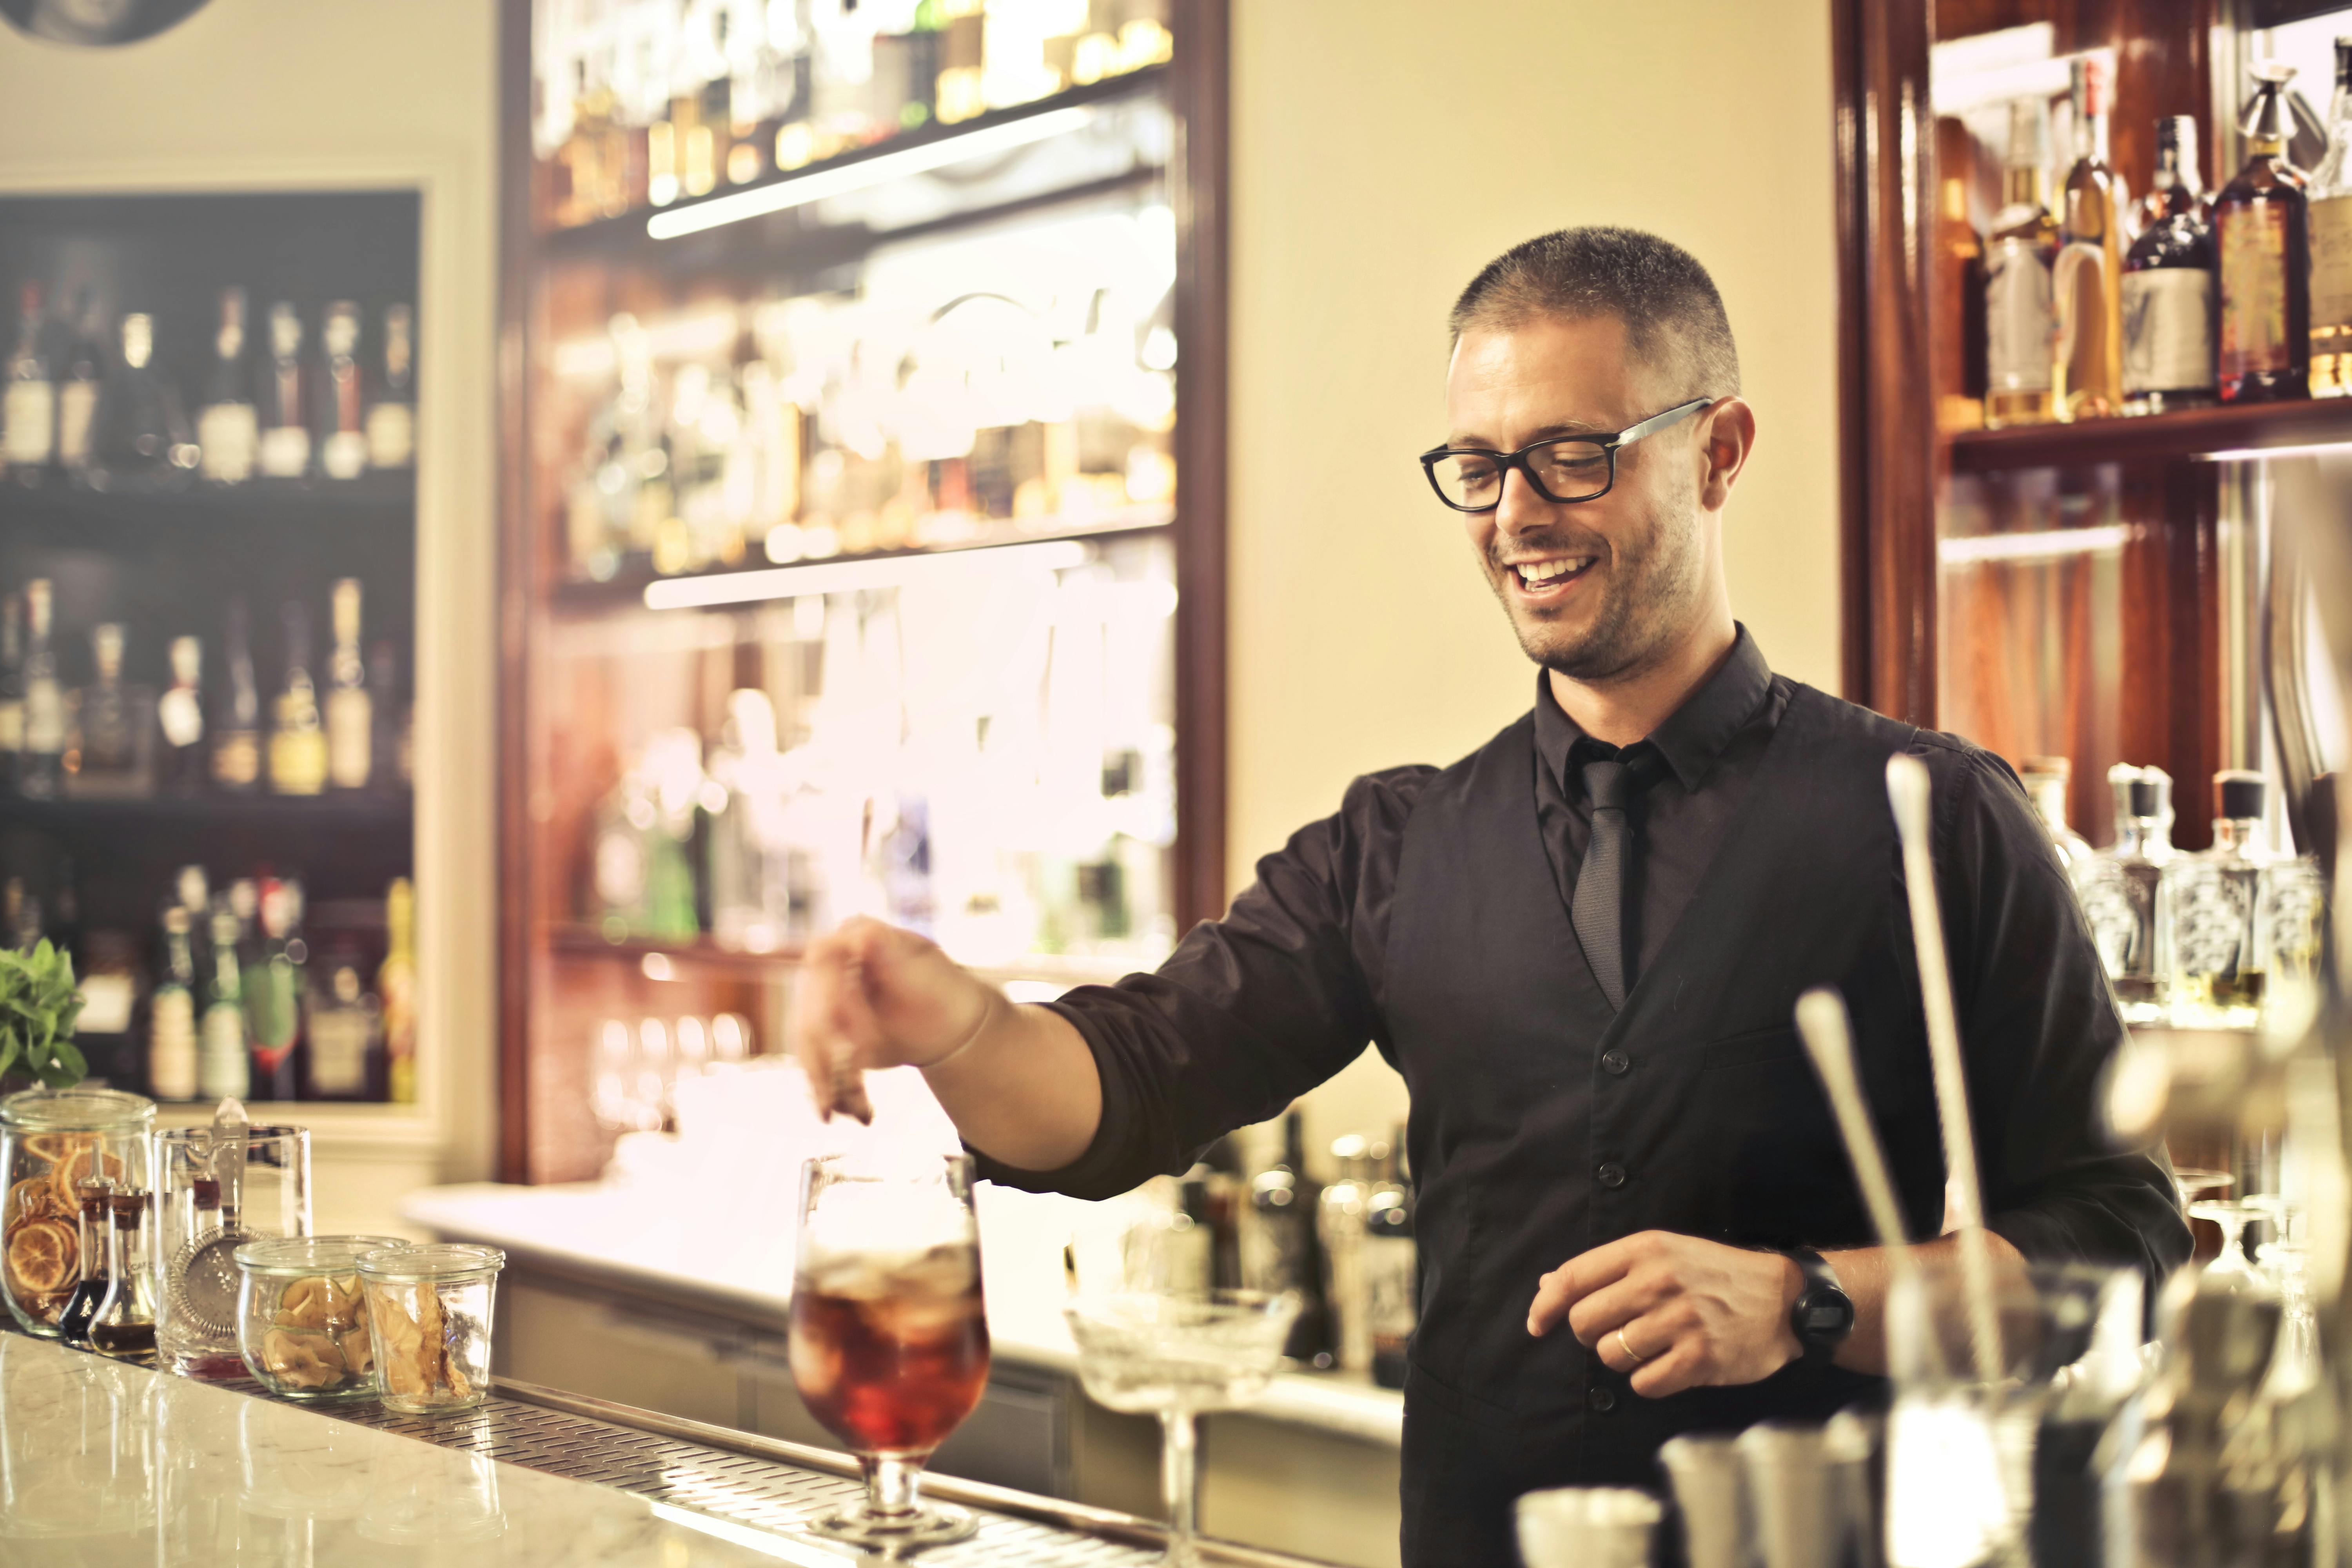 Un camarero sonriente preparando una bebida | Fuente: Pexels